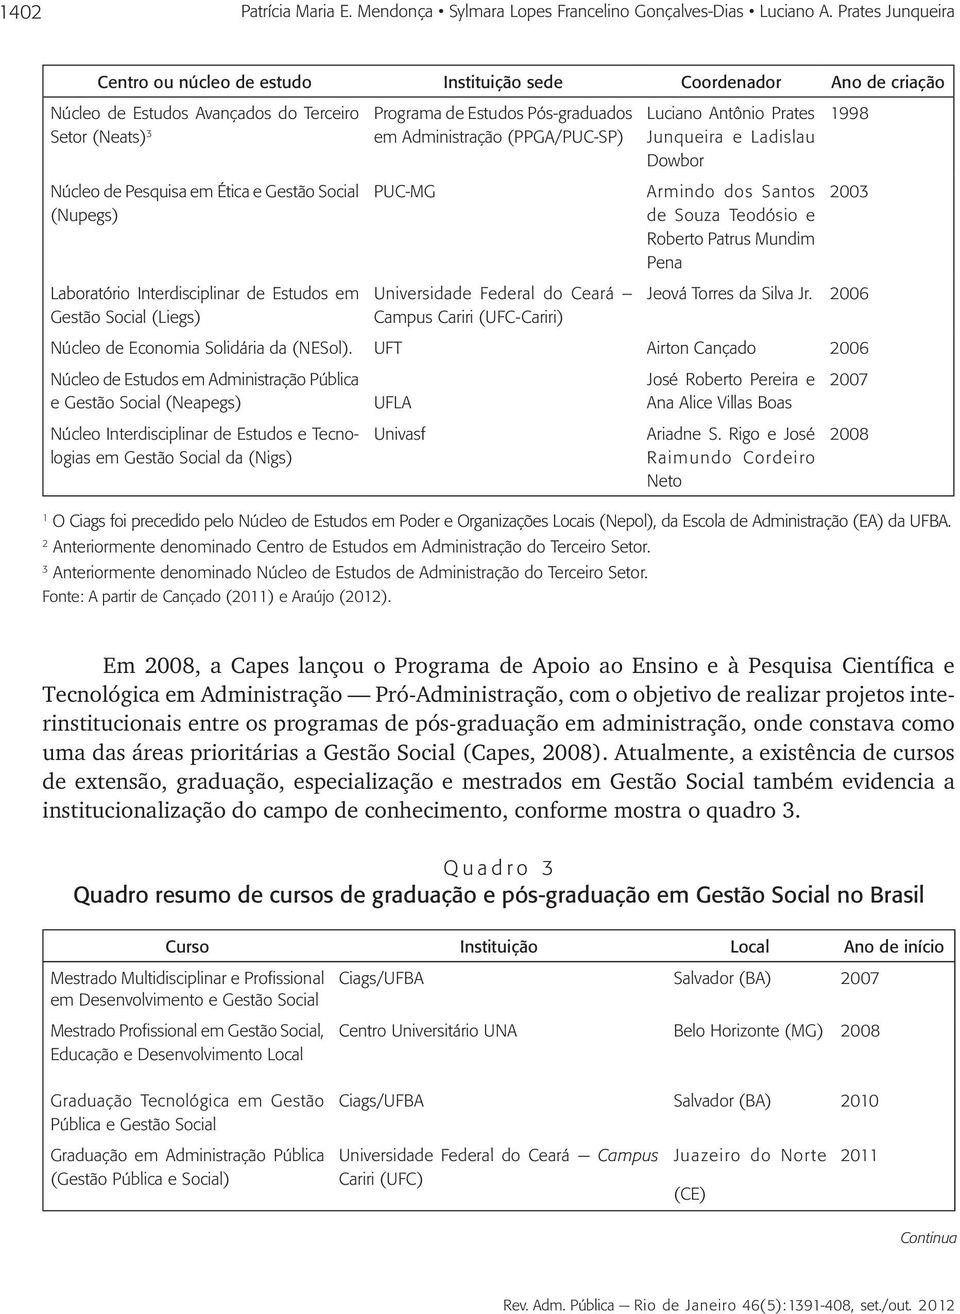 Laboratório Interdisciplinar de Estudos em Gestão Social (Liegs) Programa de Estudos Pós-graduados em Administração (PPGA/PUC-SP) PUC-MG Universidade Federal do Ceará Campus Cariri (UFC-Cariri)